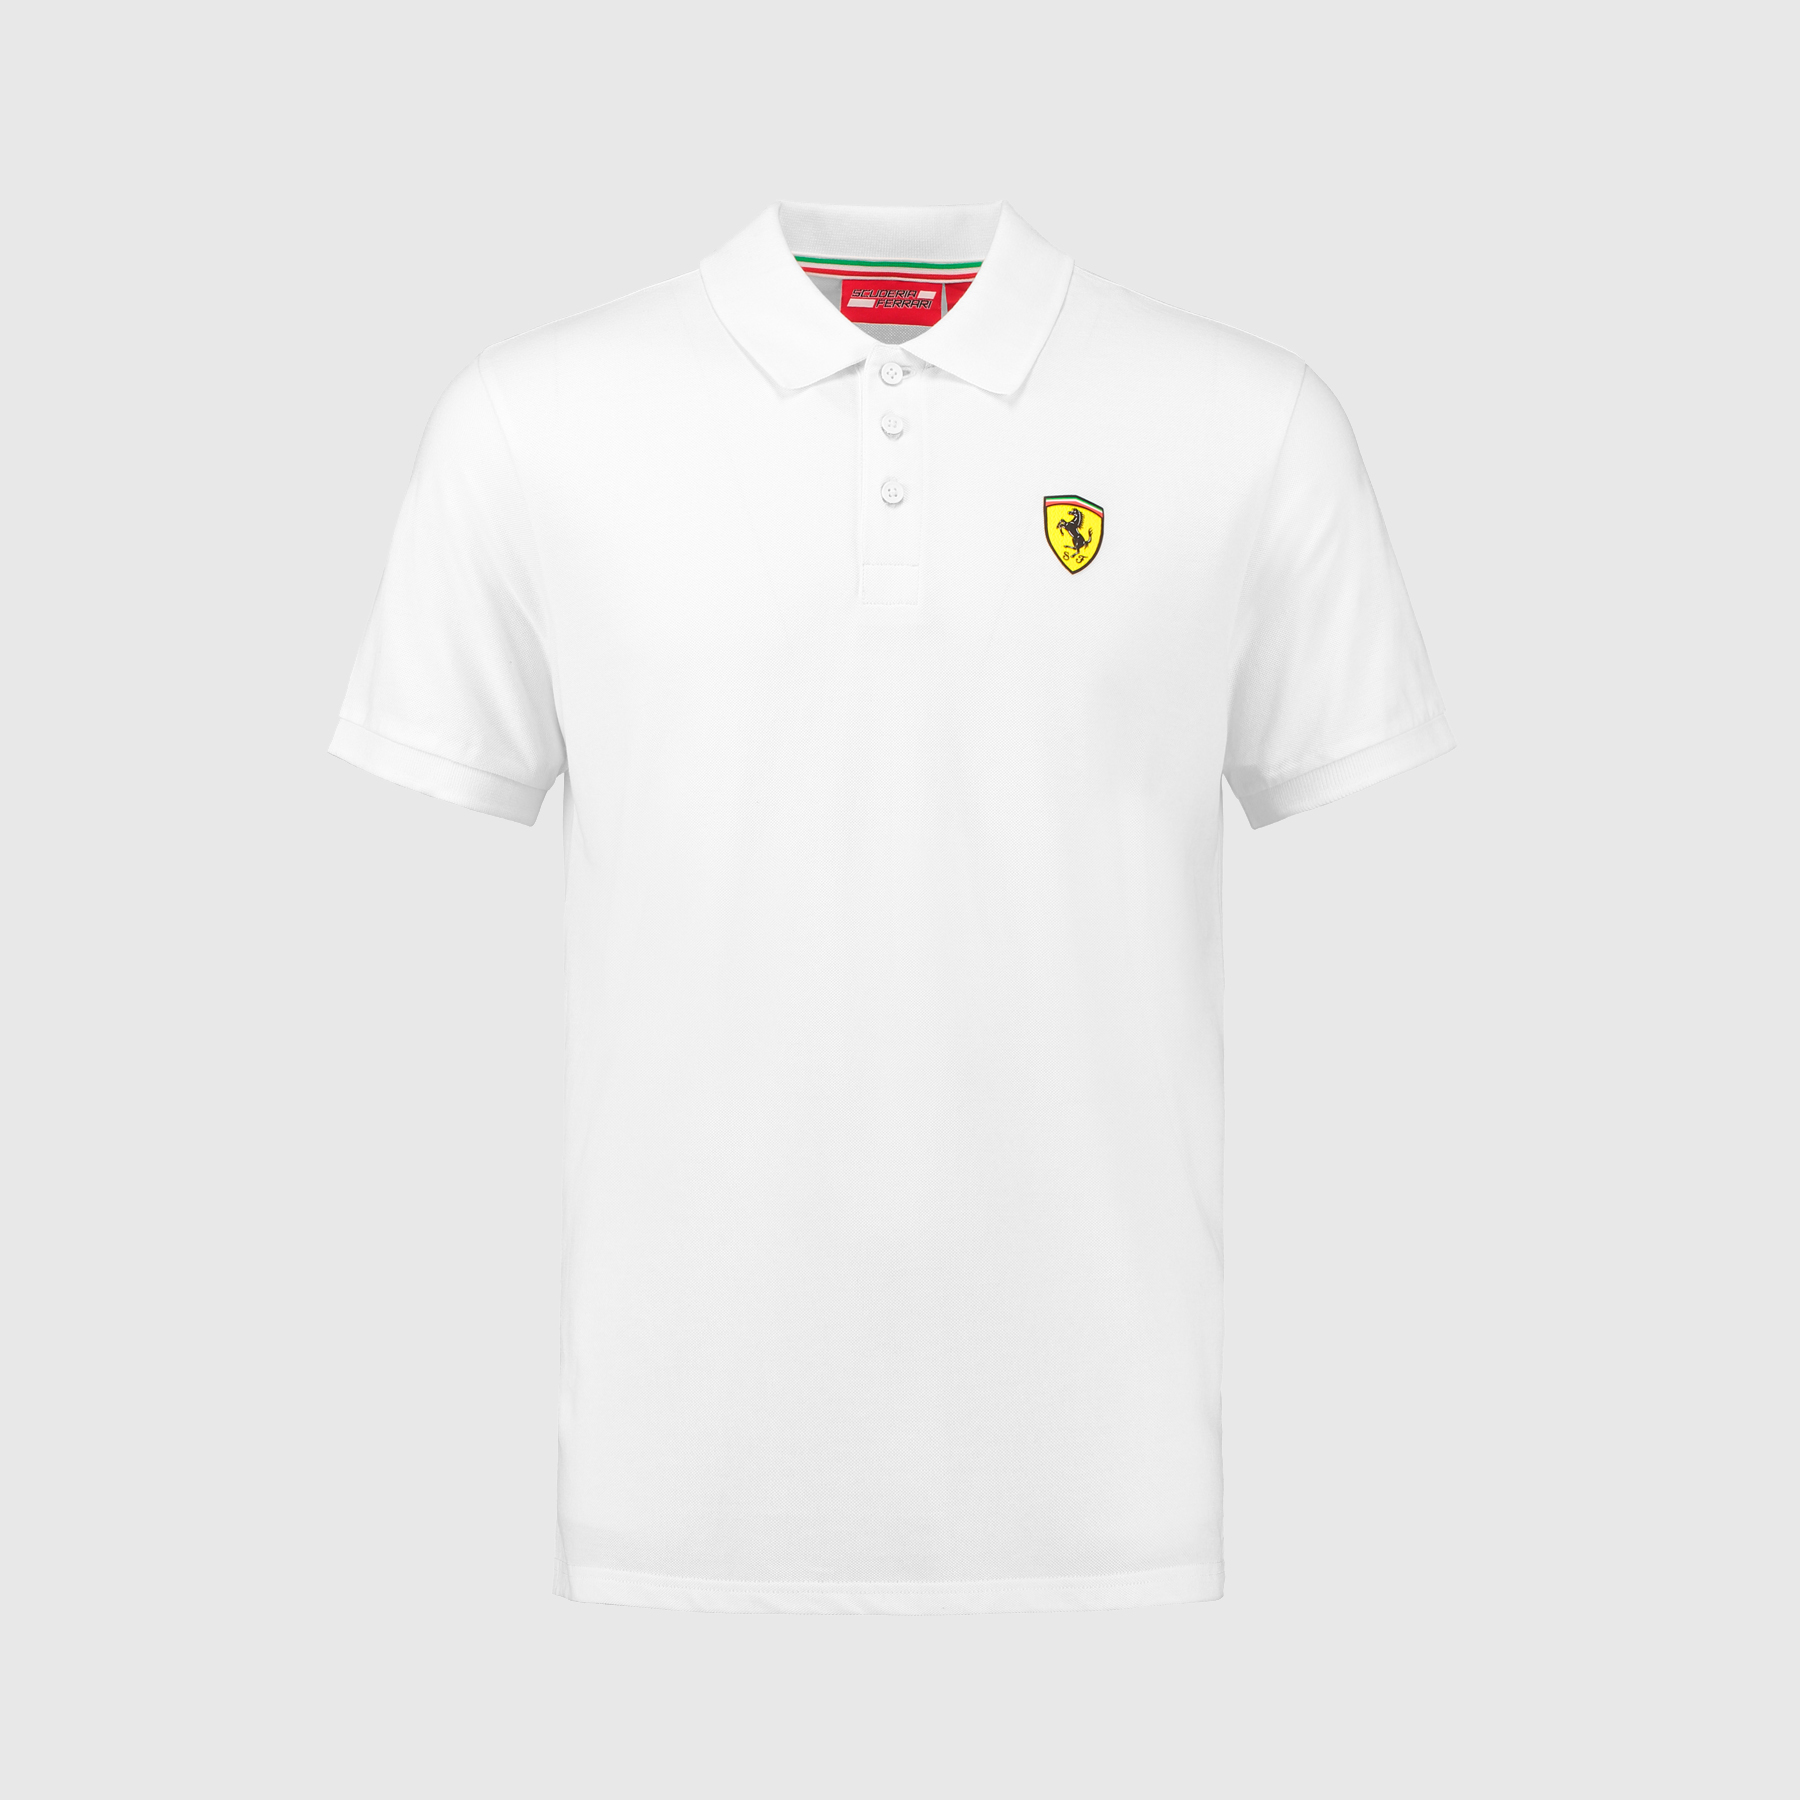 T-shirt Scuderia Ferrari Homme